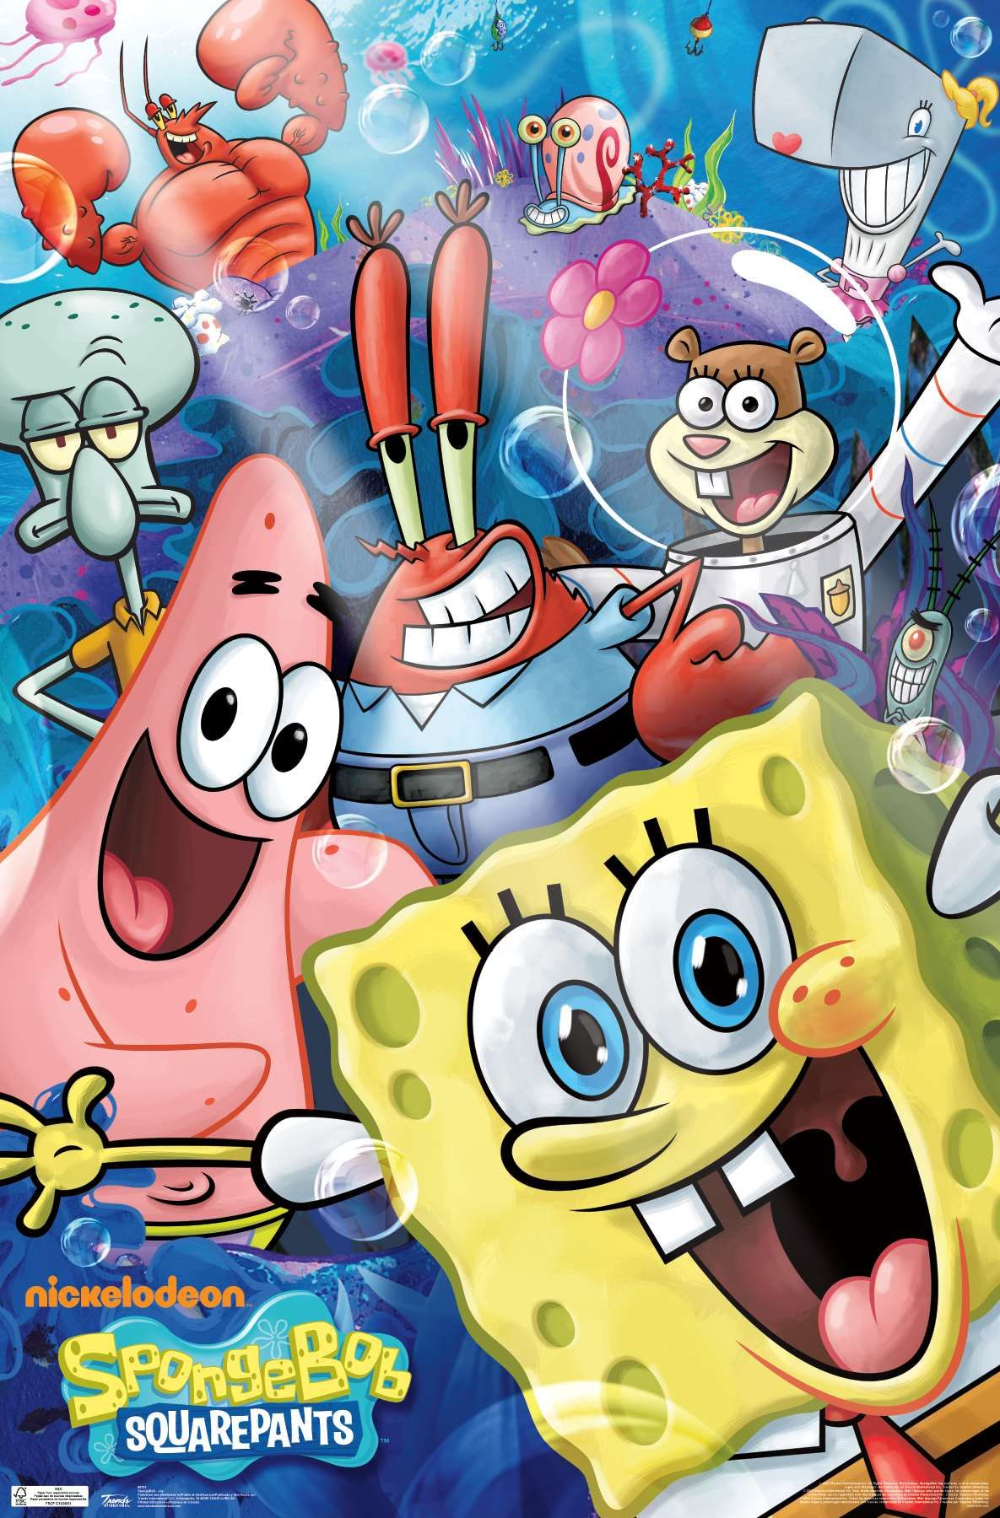 Nickelodeon Spongebob. Spongebob drawings, Spongebob wallpaper, Spongebob cartoon